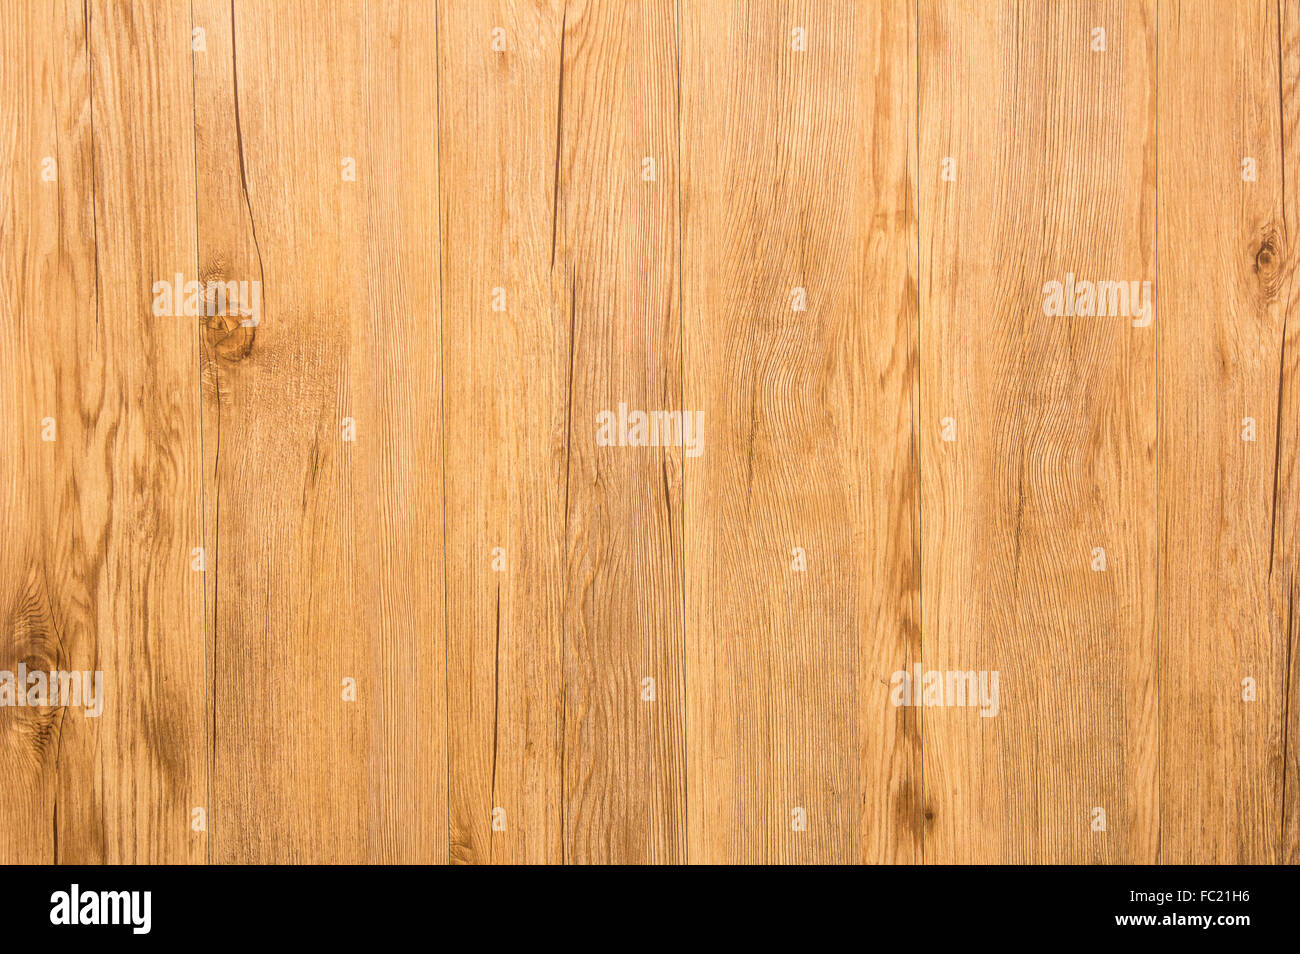 La textura de la madera, la trama de fondo de socorro bajo la textura de la superficie puede verse Foto de stock